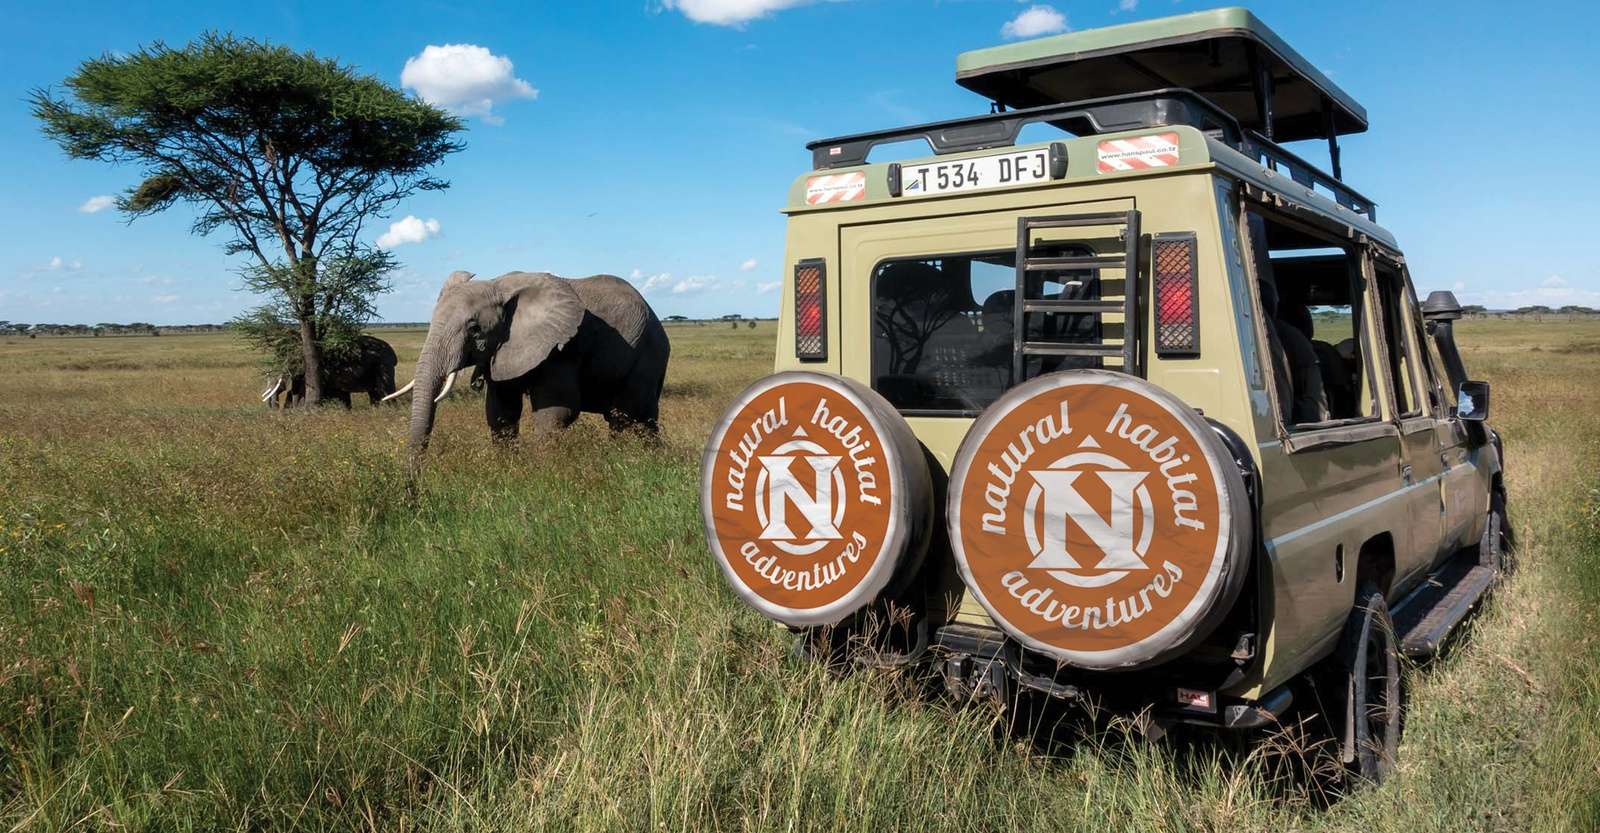 Elephants and Nat Hab safari vehicle, Maasai Mara National Reserve, Kenya.